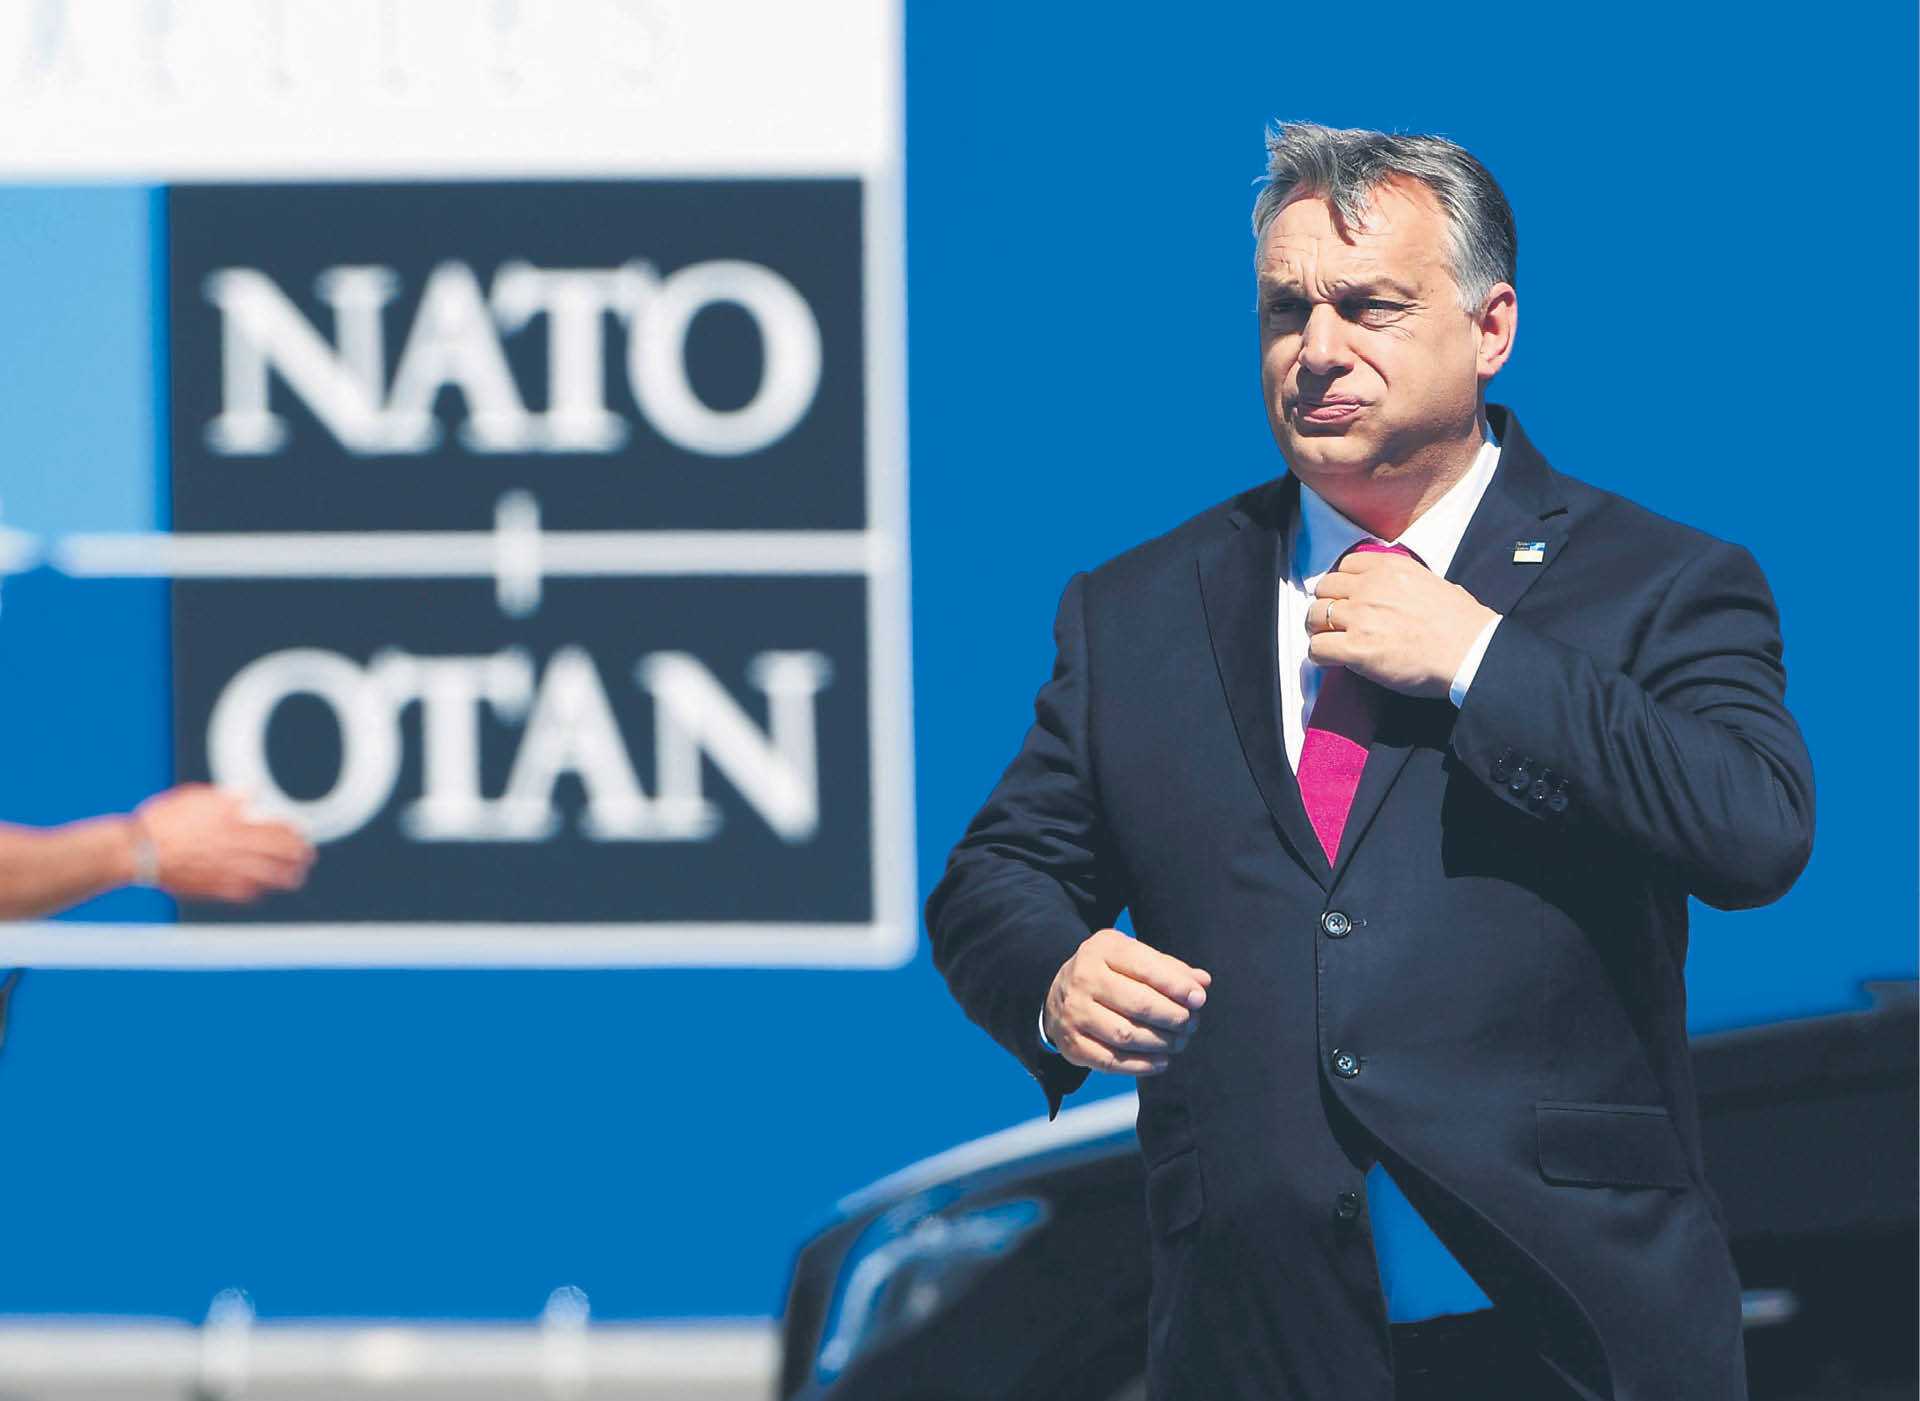 Premier Węgier Viktor Orbán na szczycie NATO w Brukseli w 2017 r.